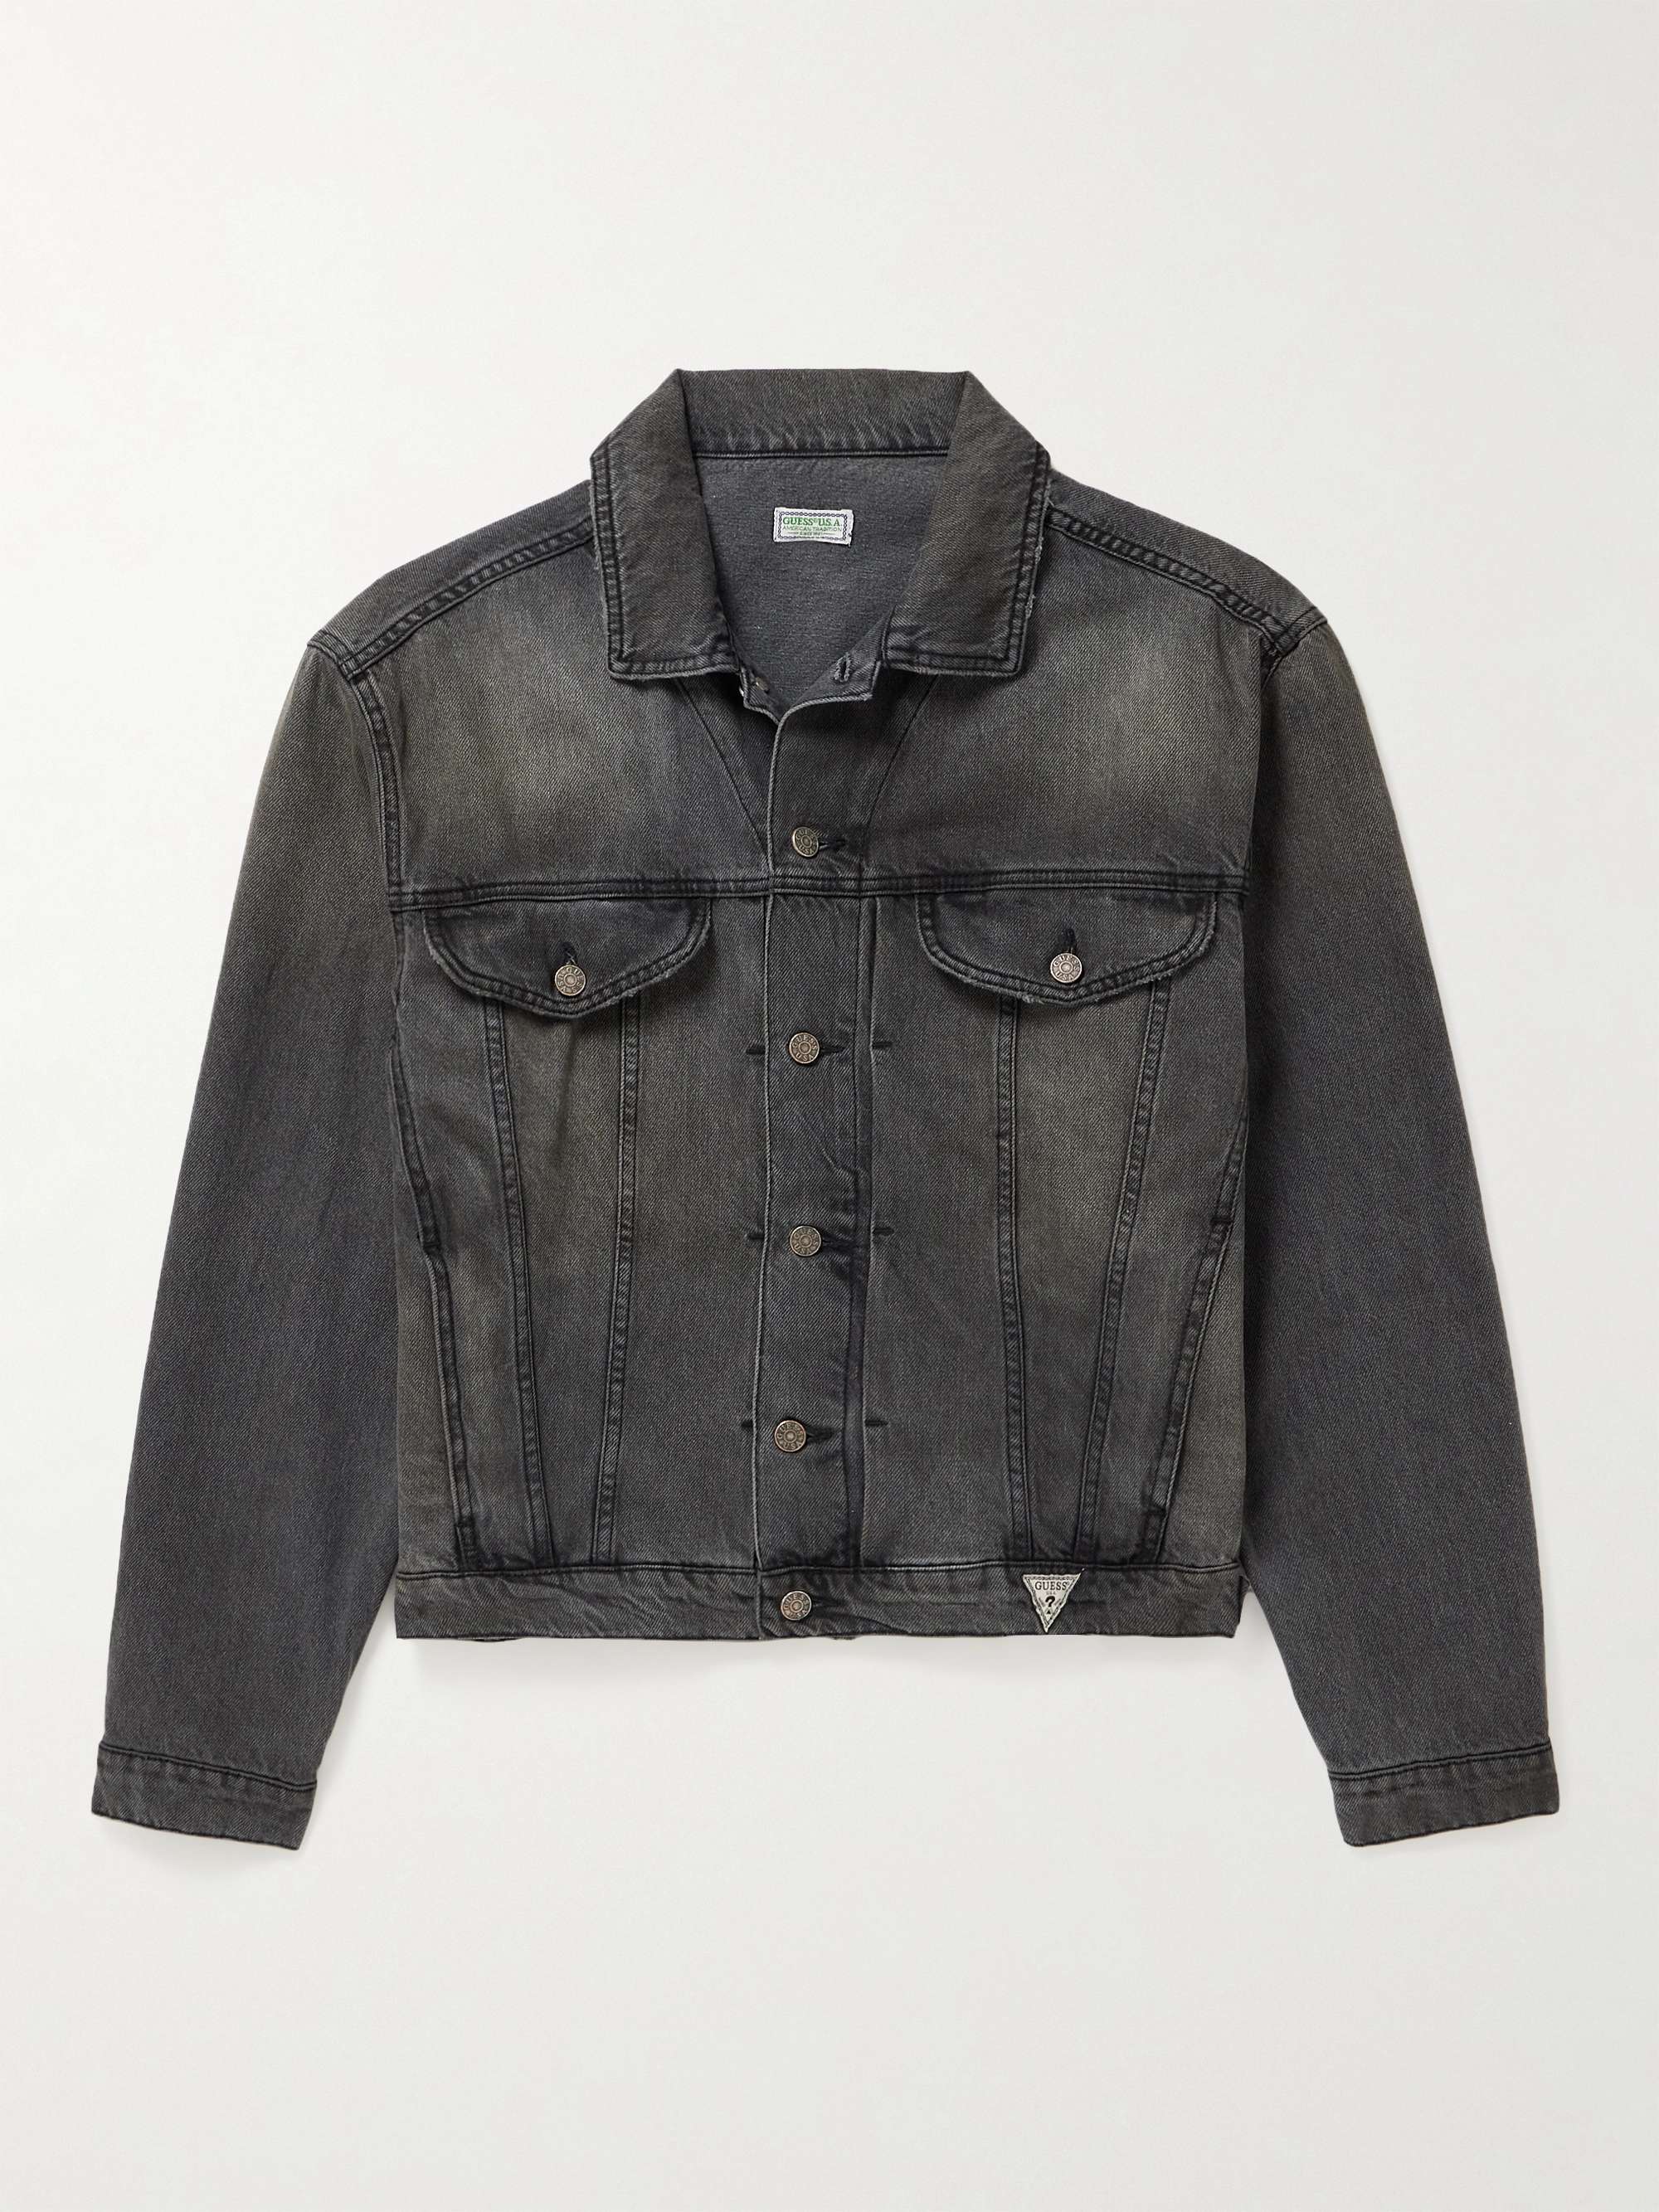 GUESS USA Gusa Vintage Denim Trucker Jacket for Men | MR PORTER